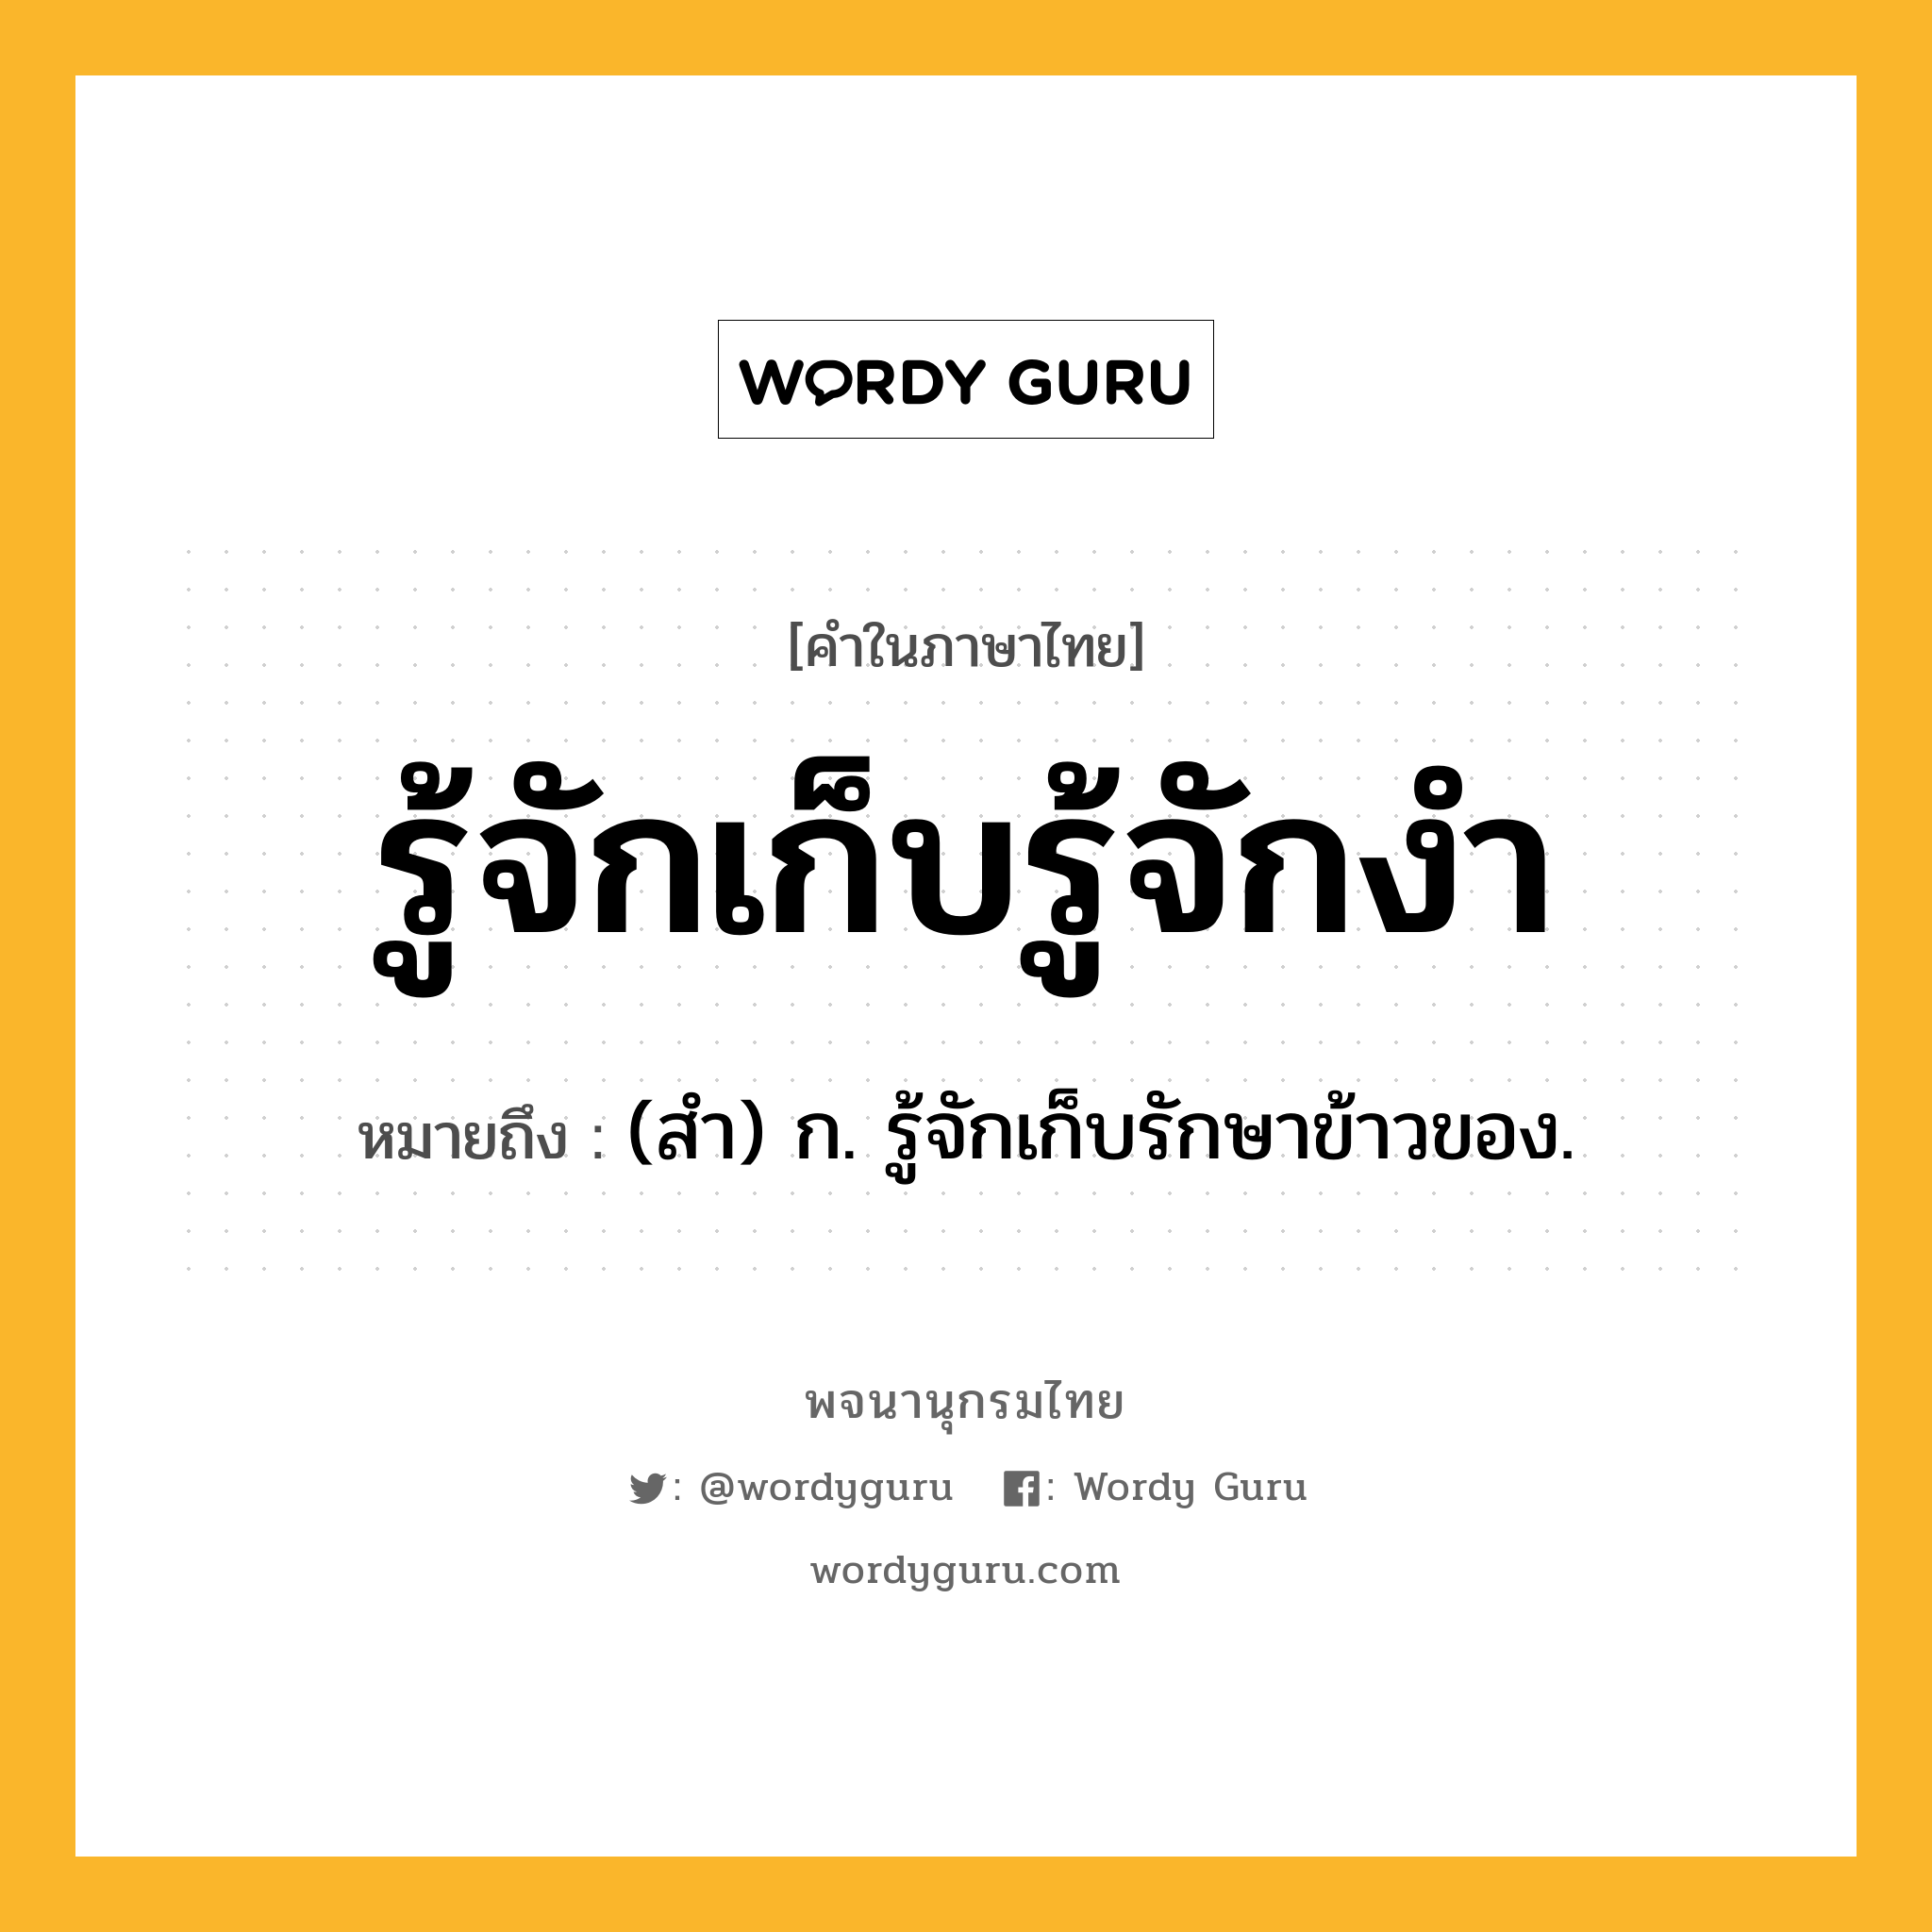 รู้จักเก็บรู้จักงำ ความหมาย หมายถึงอะไร?, คำในภาษาไทย รู้จักเก็บรู้จักงำ หมายถึง (สํา) ก. รู้จักเก็บรักษาข้าวของ.